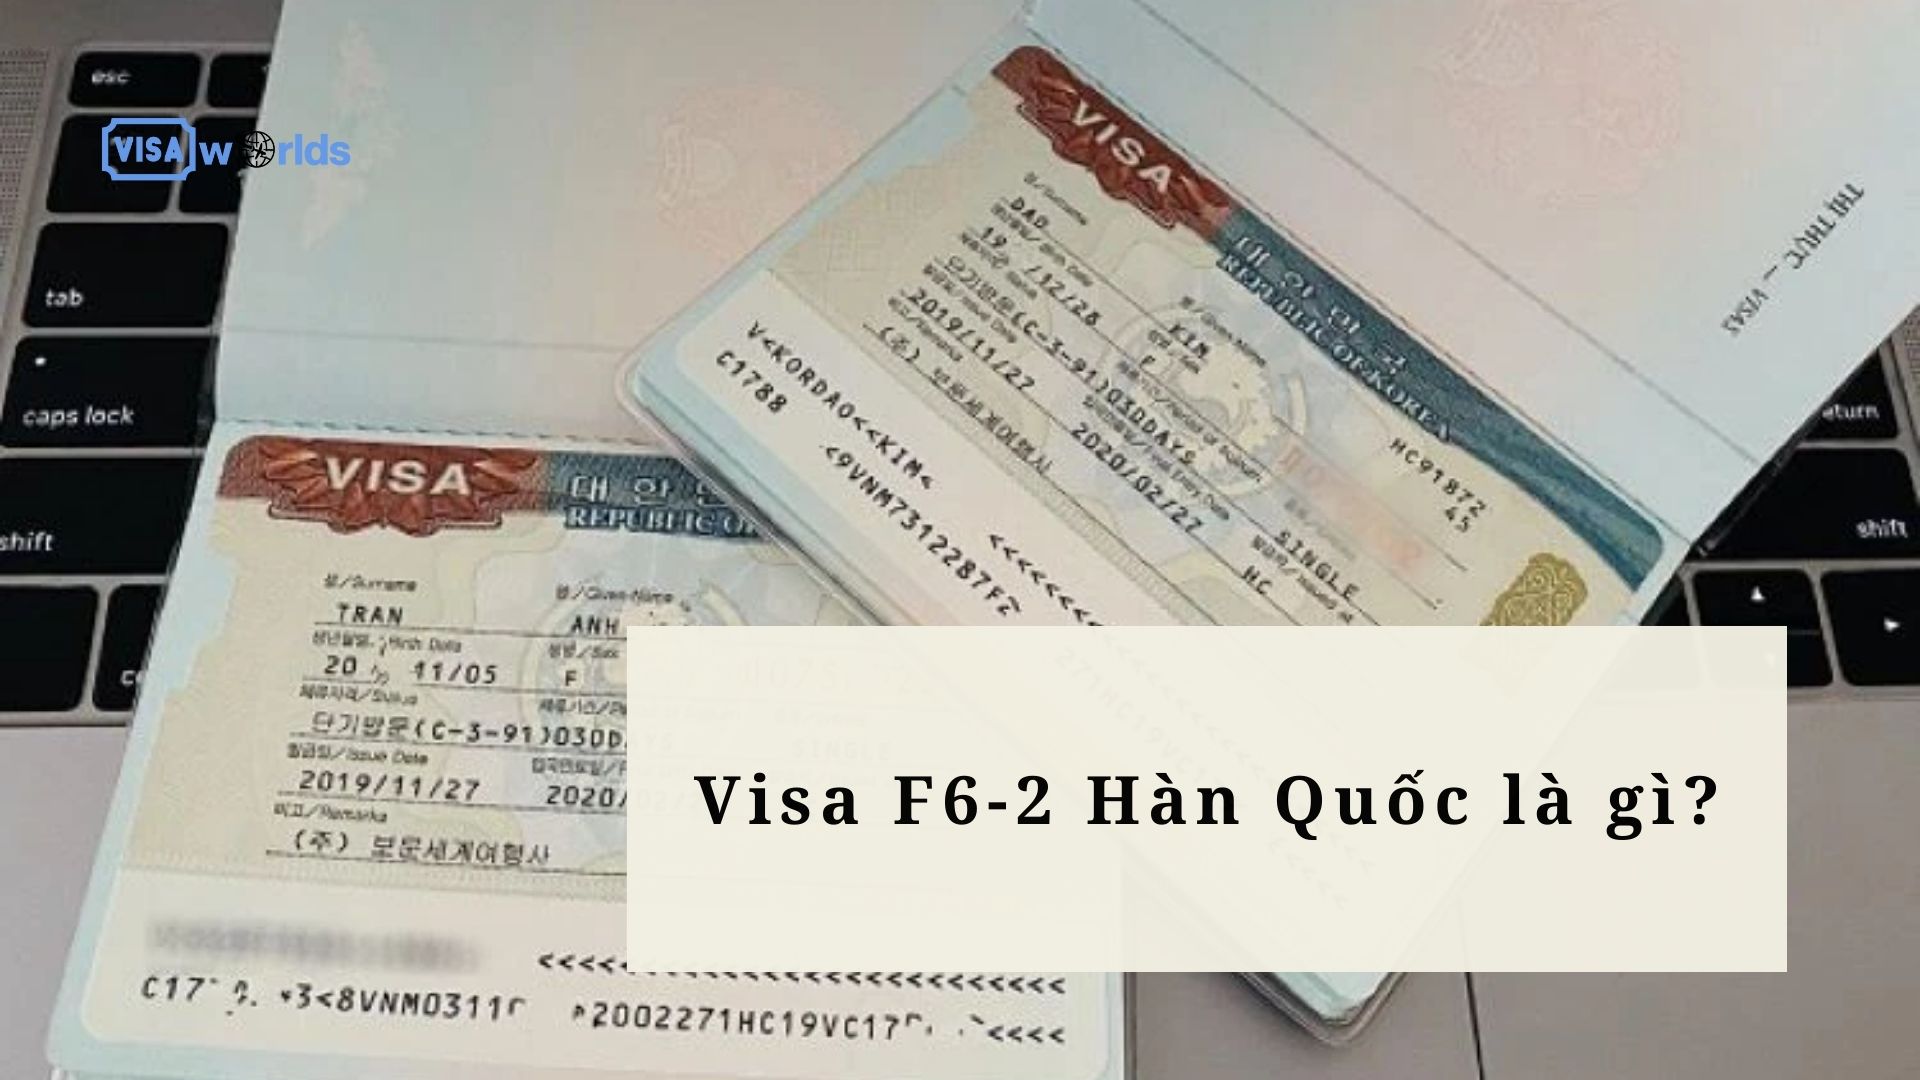 Visa F6-2 Hàn Quốc là gì